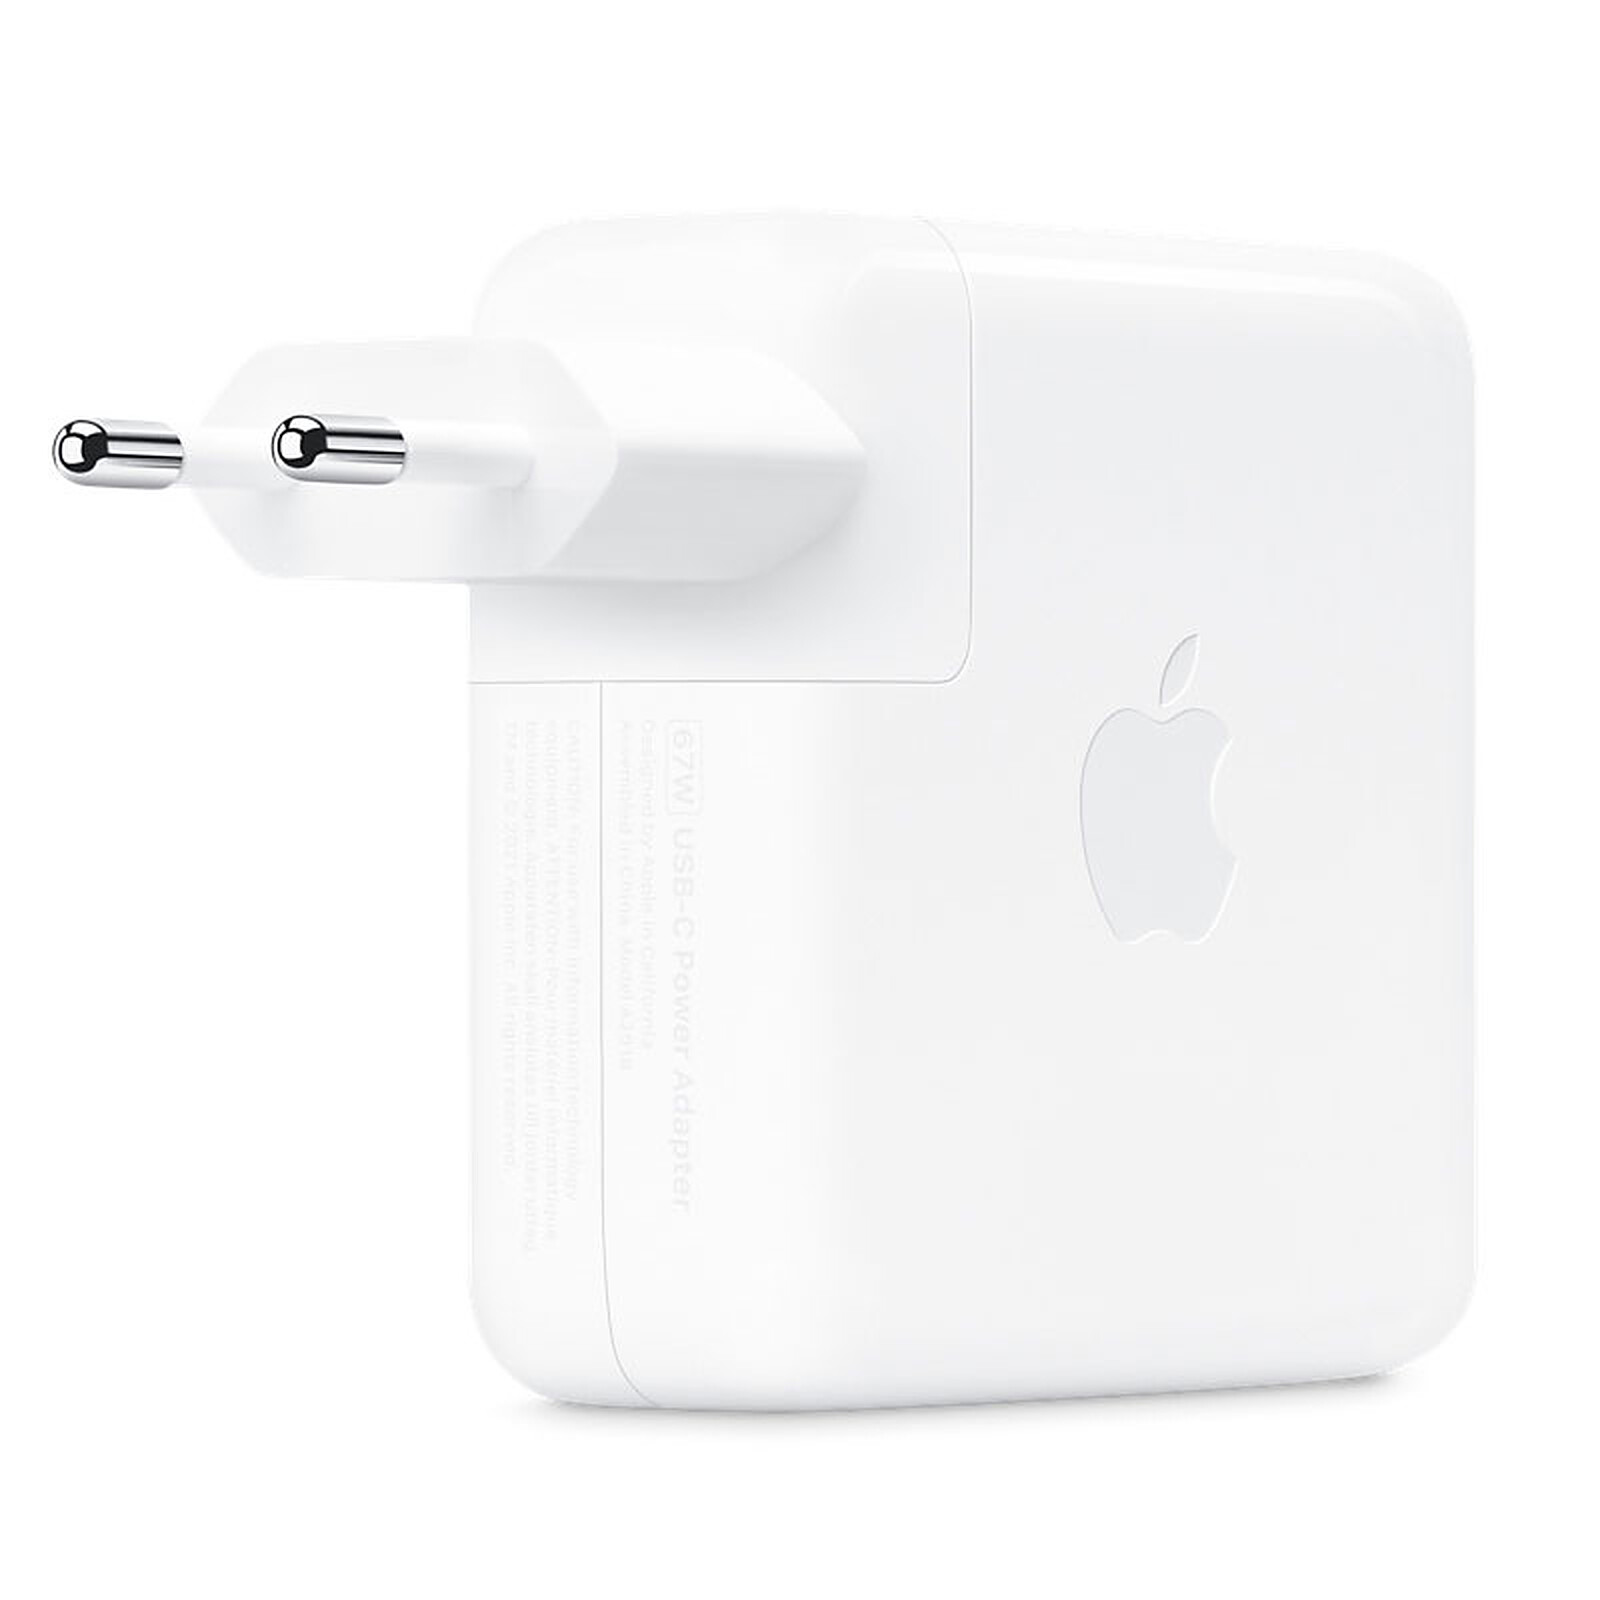 Apple Adaptador de Corriente USB-C de 20 W : : Informática